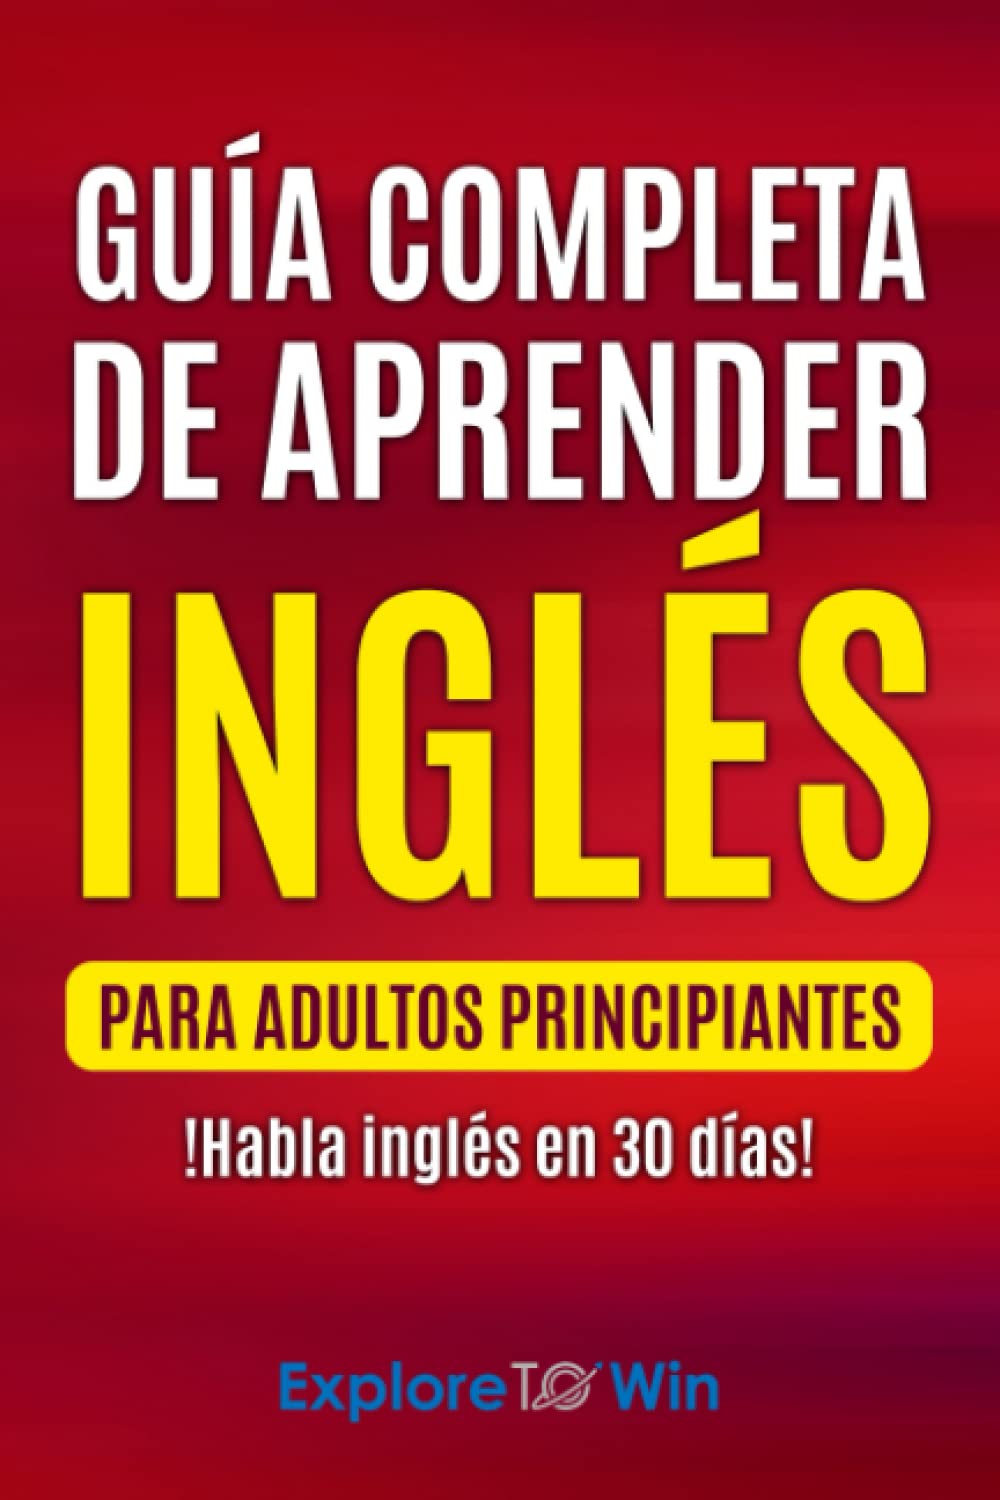 Guía completa de aprender inglés para adultos principiantes: !Habla inglés en 30 días!